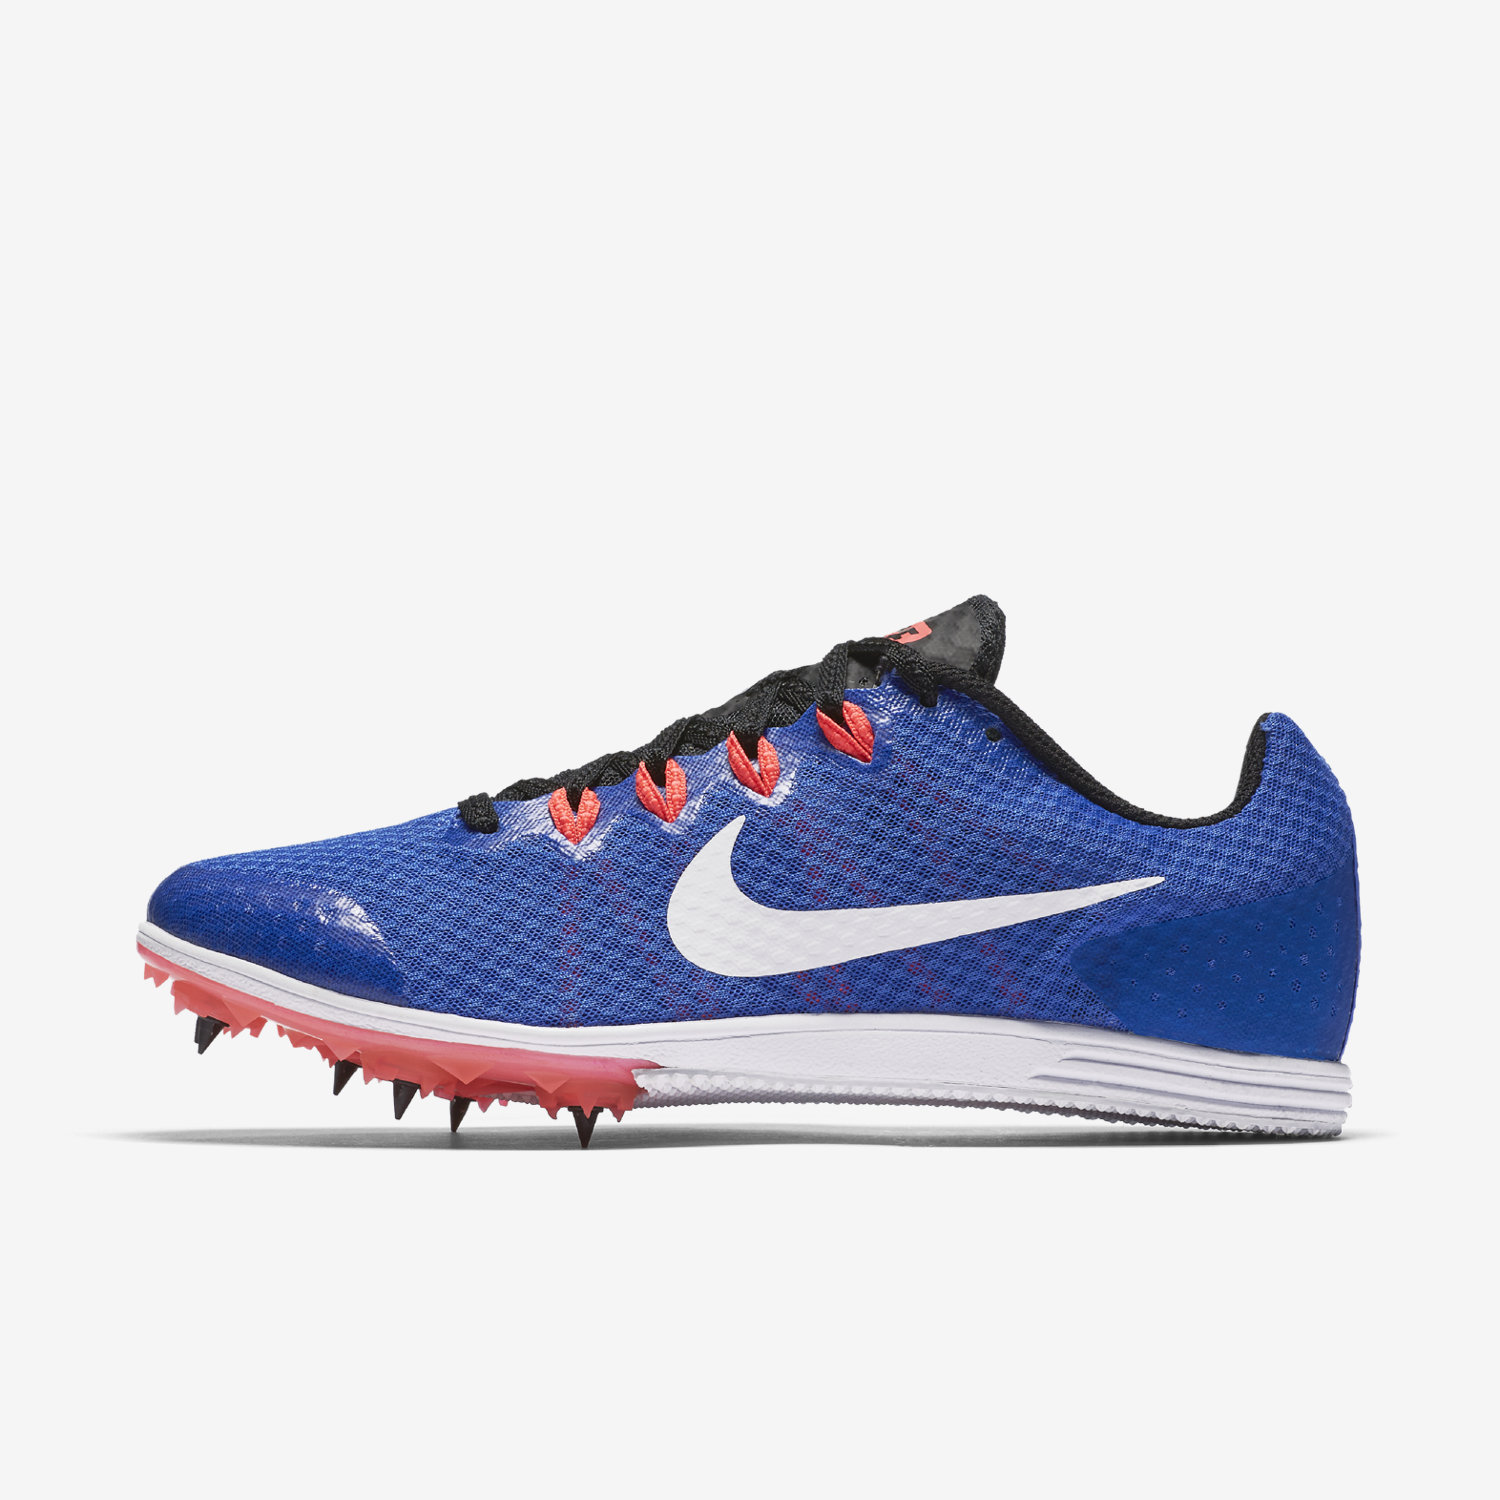 Παπουτσια Στιβου Spikes γυναικεια Nike Zoom Rival D 9 μπλε/μαυρα/ασπρα 56312866HX